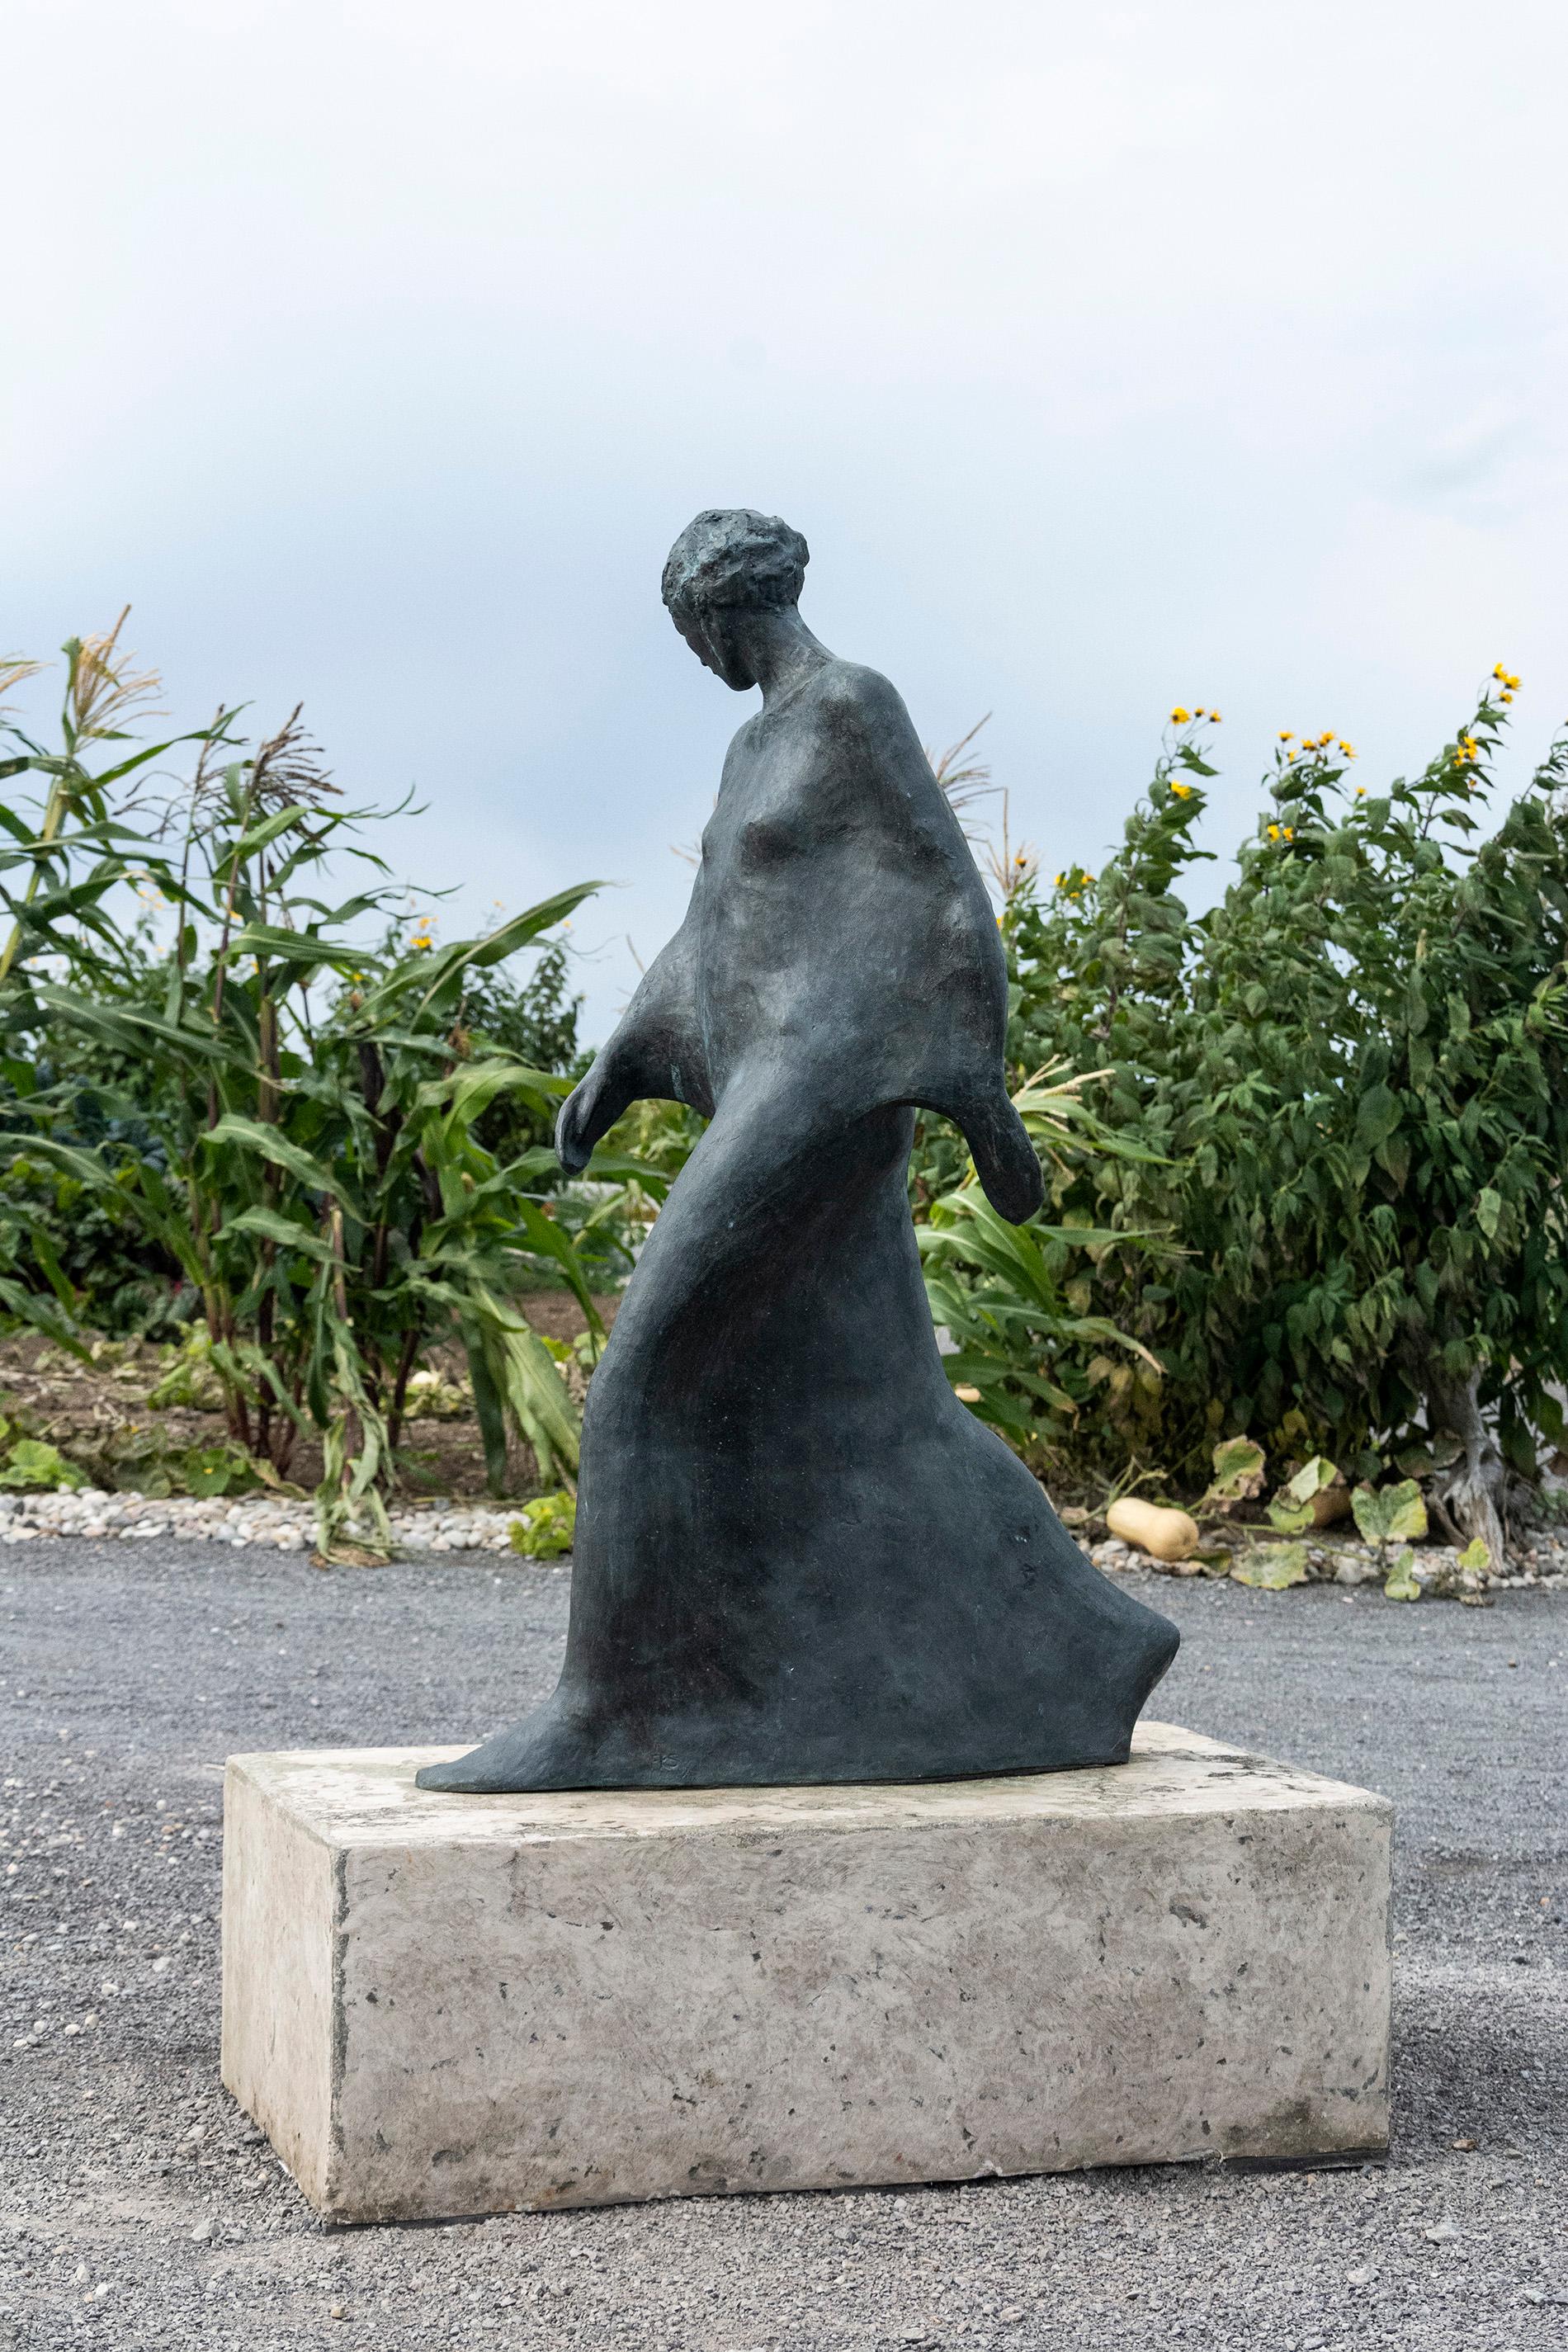 En utilisant des formes simplifiées, l'artiste Frances Semple révèle l'essence émotive du mouvement dans cette sculpture en bronze d'une femme qui marche. 

D'une hauteur de 60 pouces, le personnage est grandeur nature. La sculpture porte les